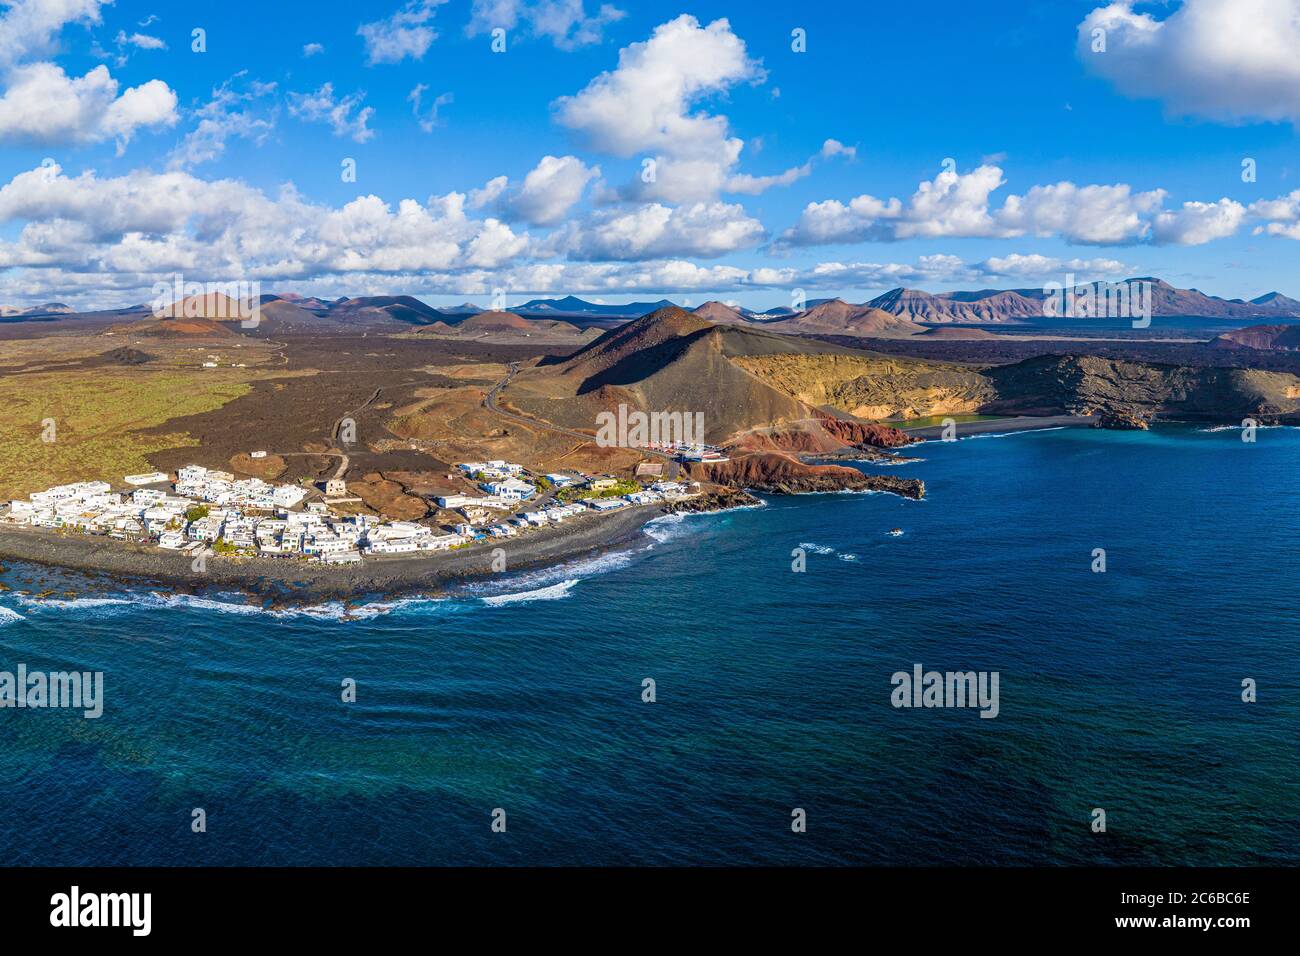 Vista aérea del pueblo el Golfo y del paisaje volcánico del Parque Nacional Timanfaya, Lanzarote, Islas Canarias, España, Atlántico, Europa Foto de stock